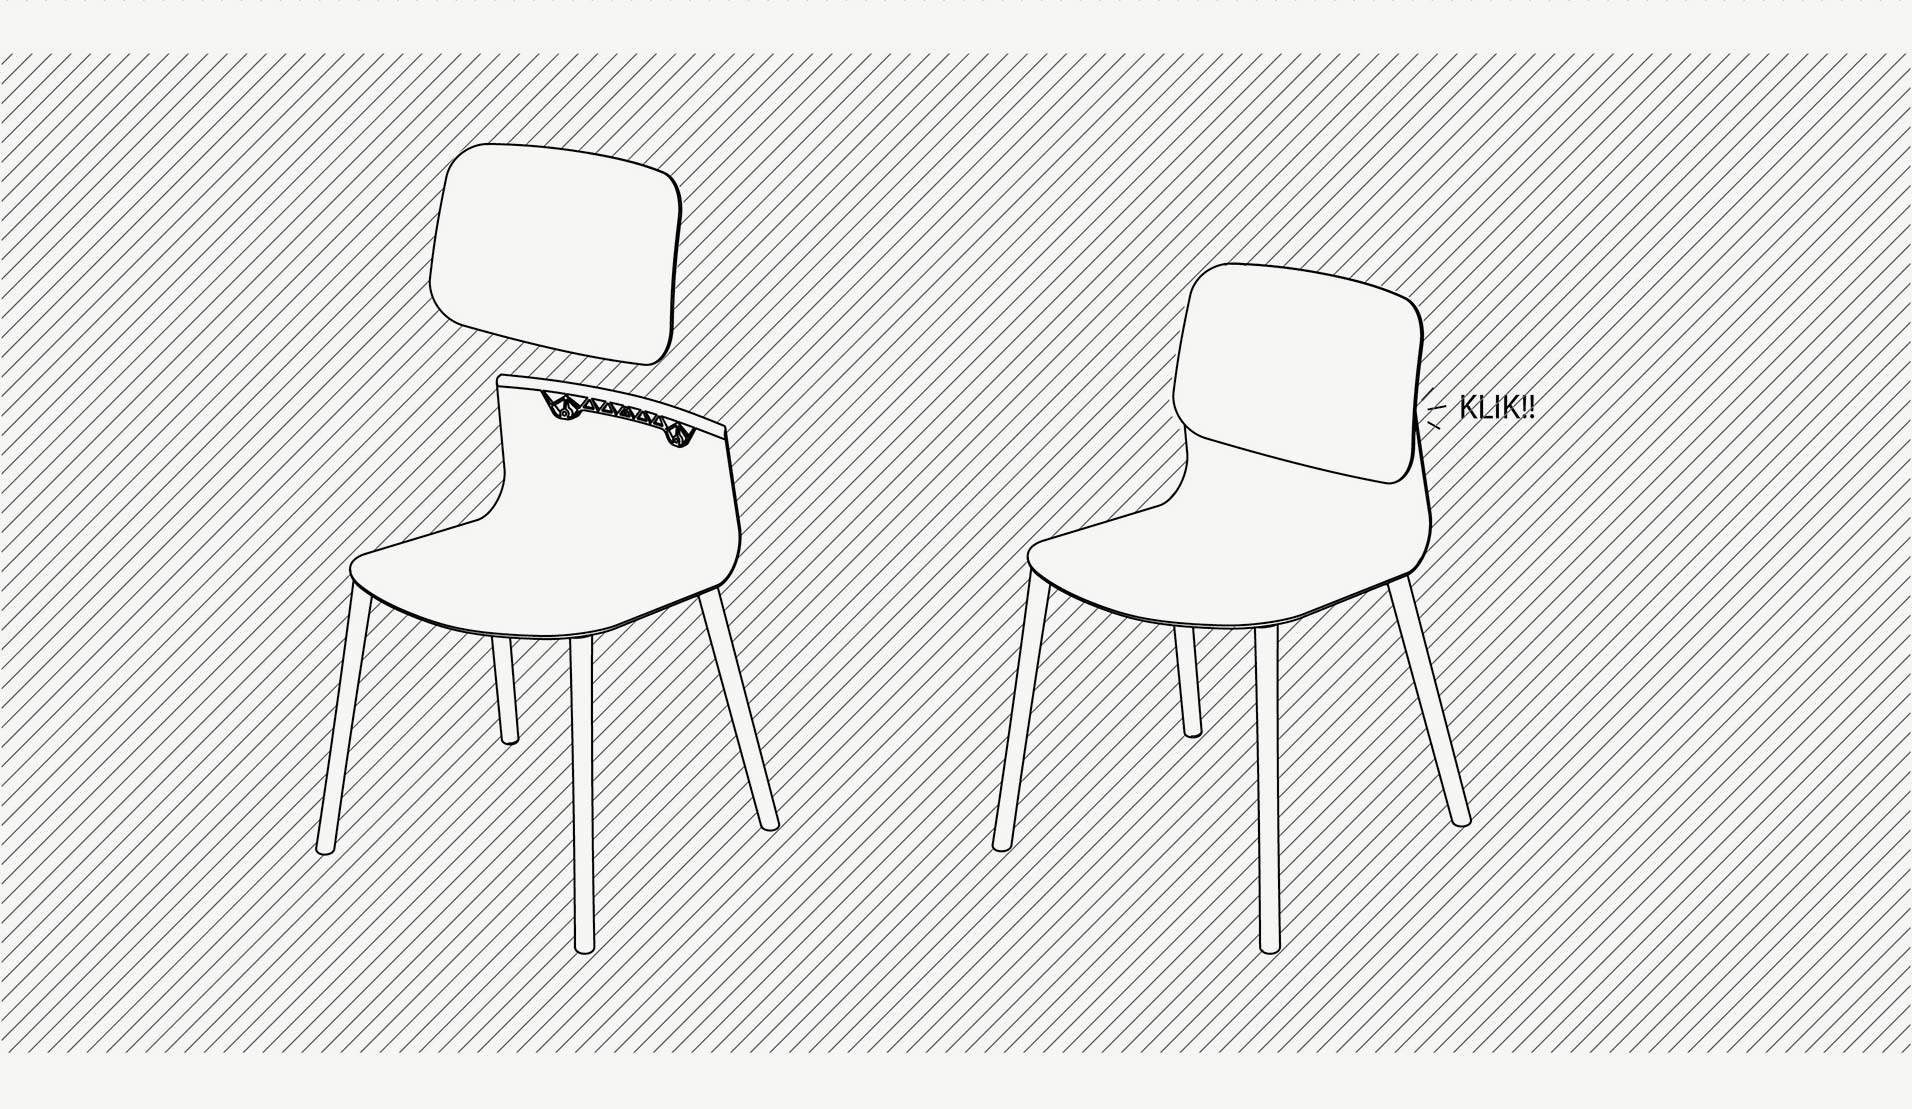 klik-design-task-chair-sokoa-iratzoki-lizaso